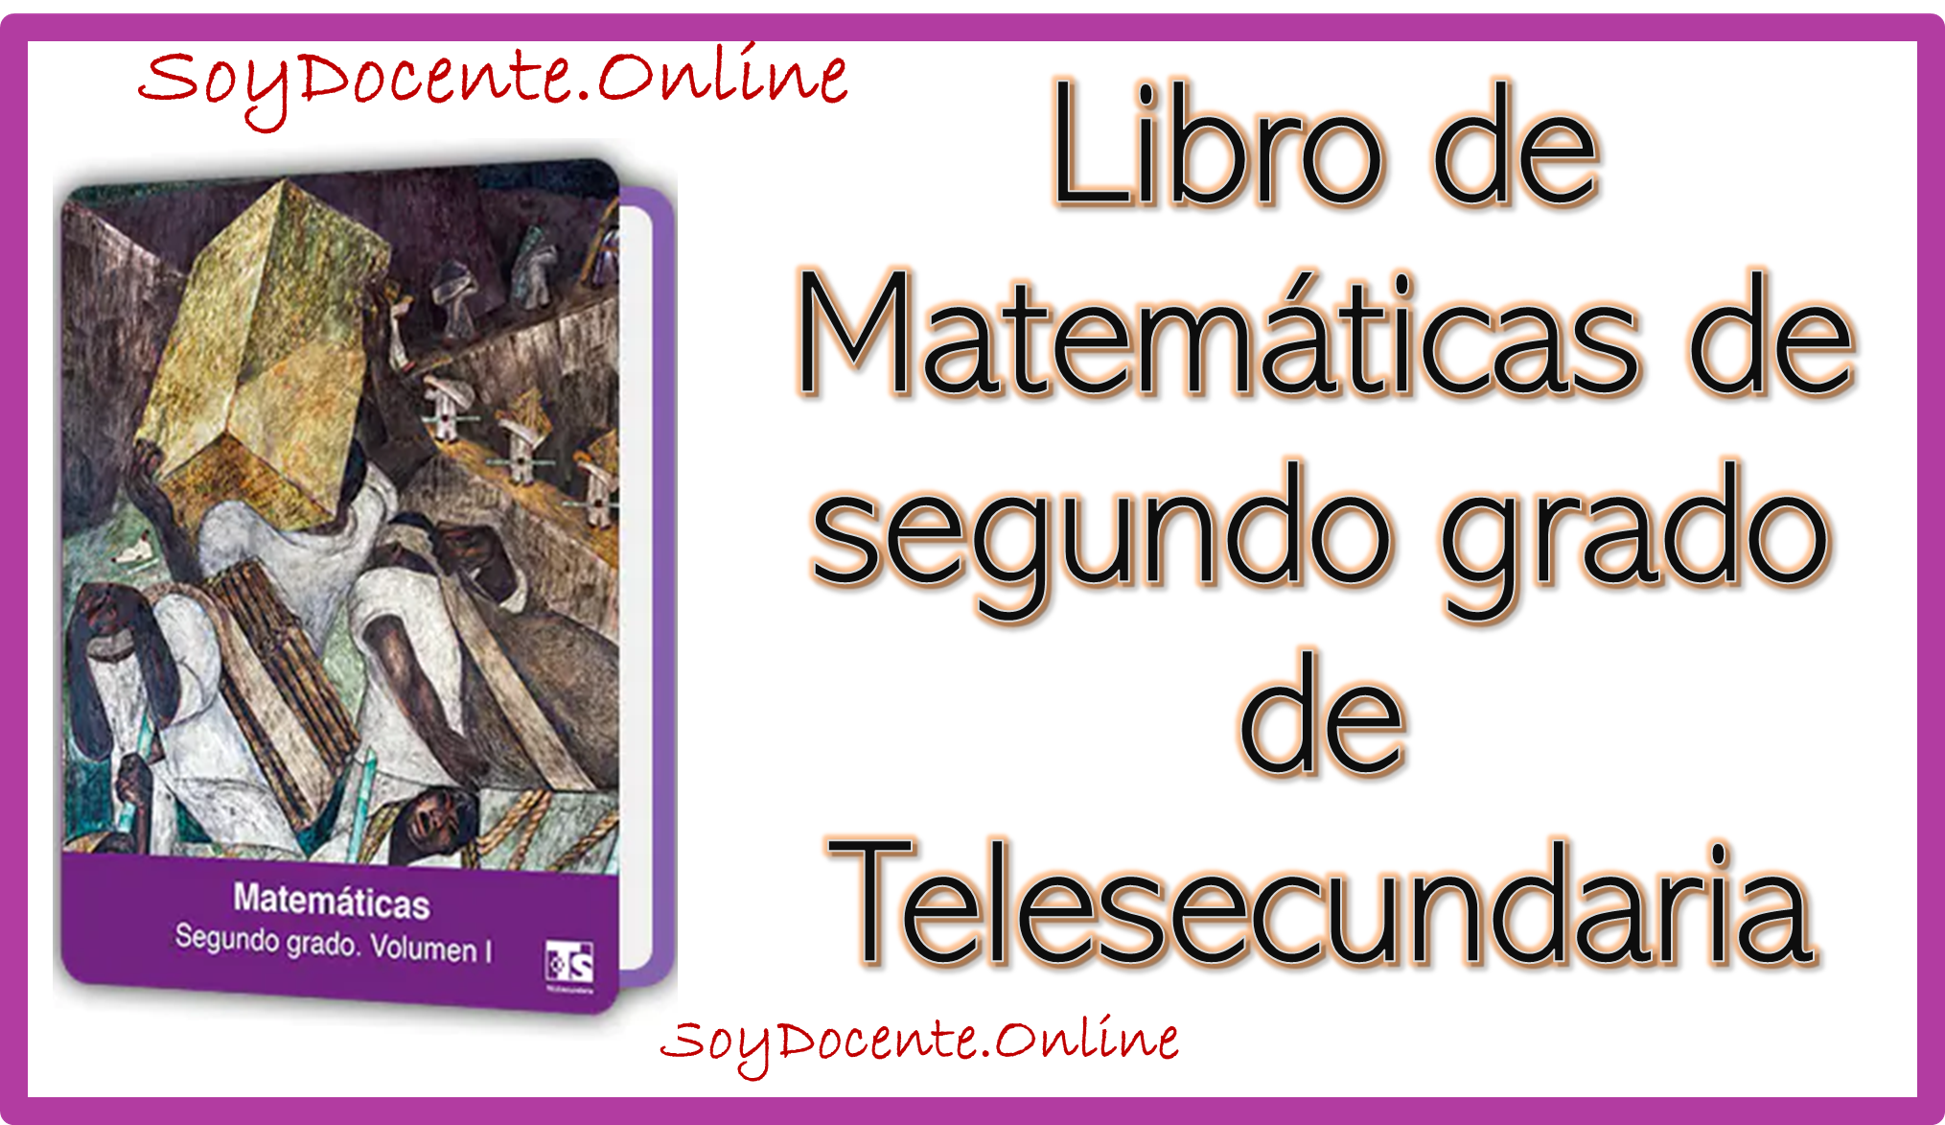 Libro de Matemáticas segundo grado de Telesecundaria planificado por la SEP y distribuido por la CONALITEG